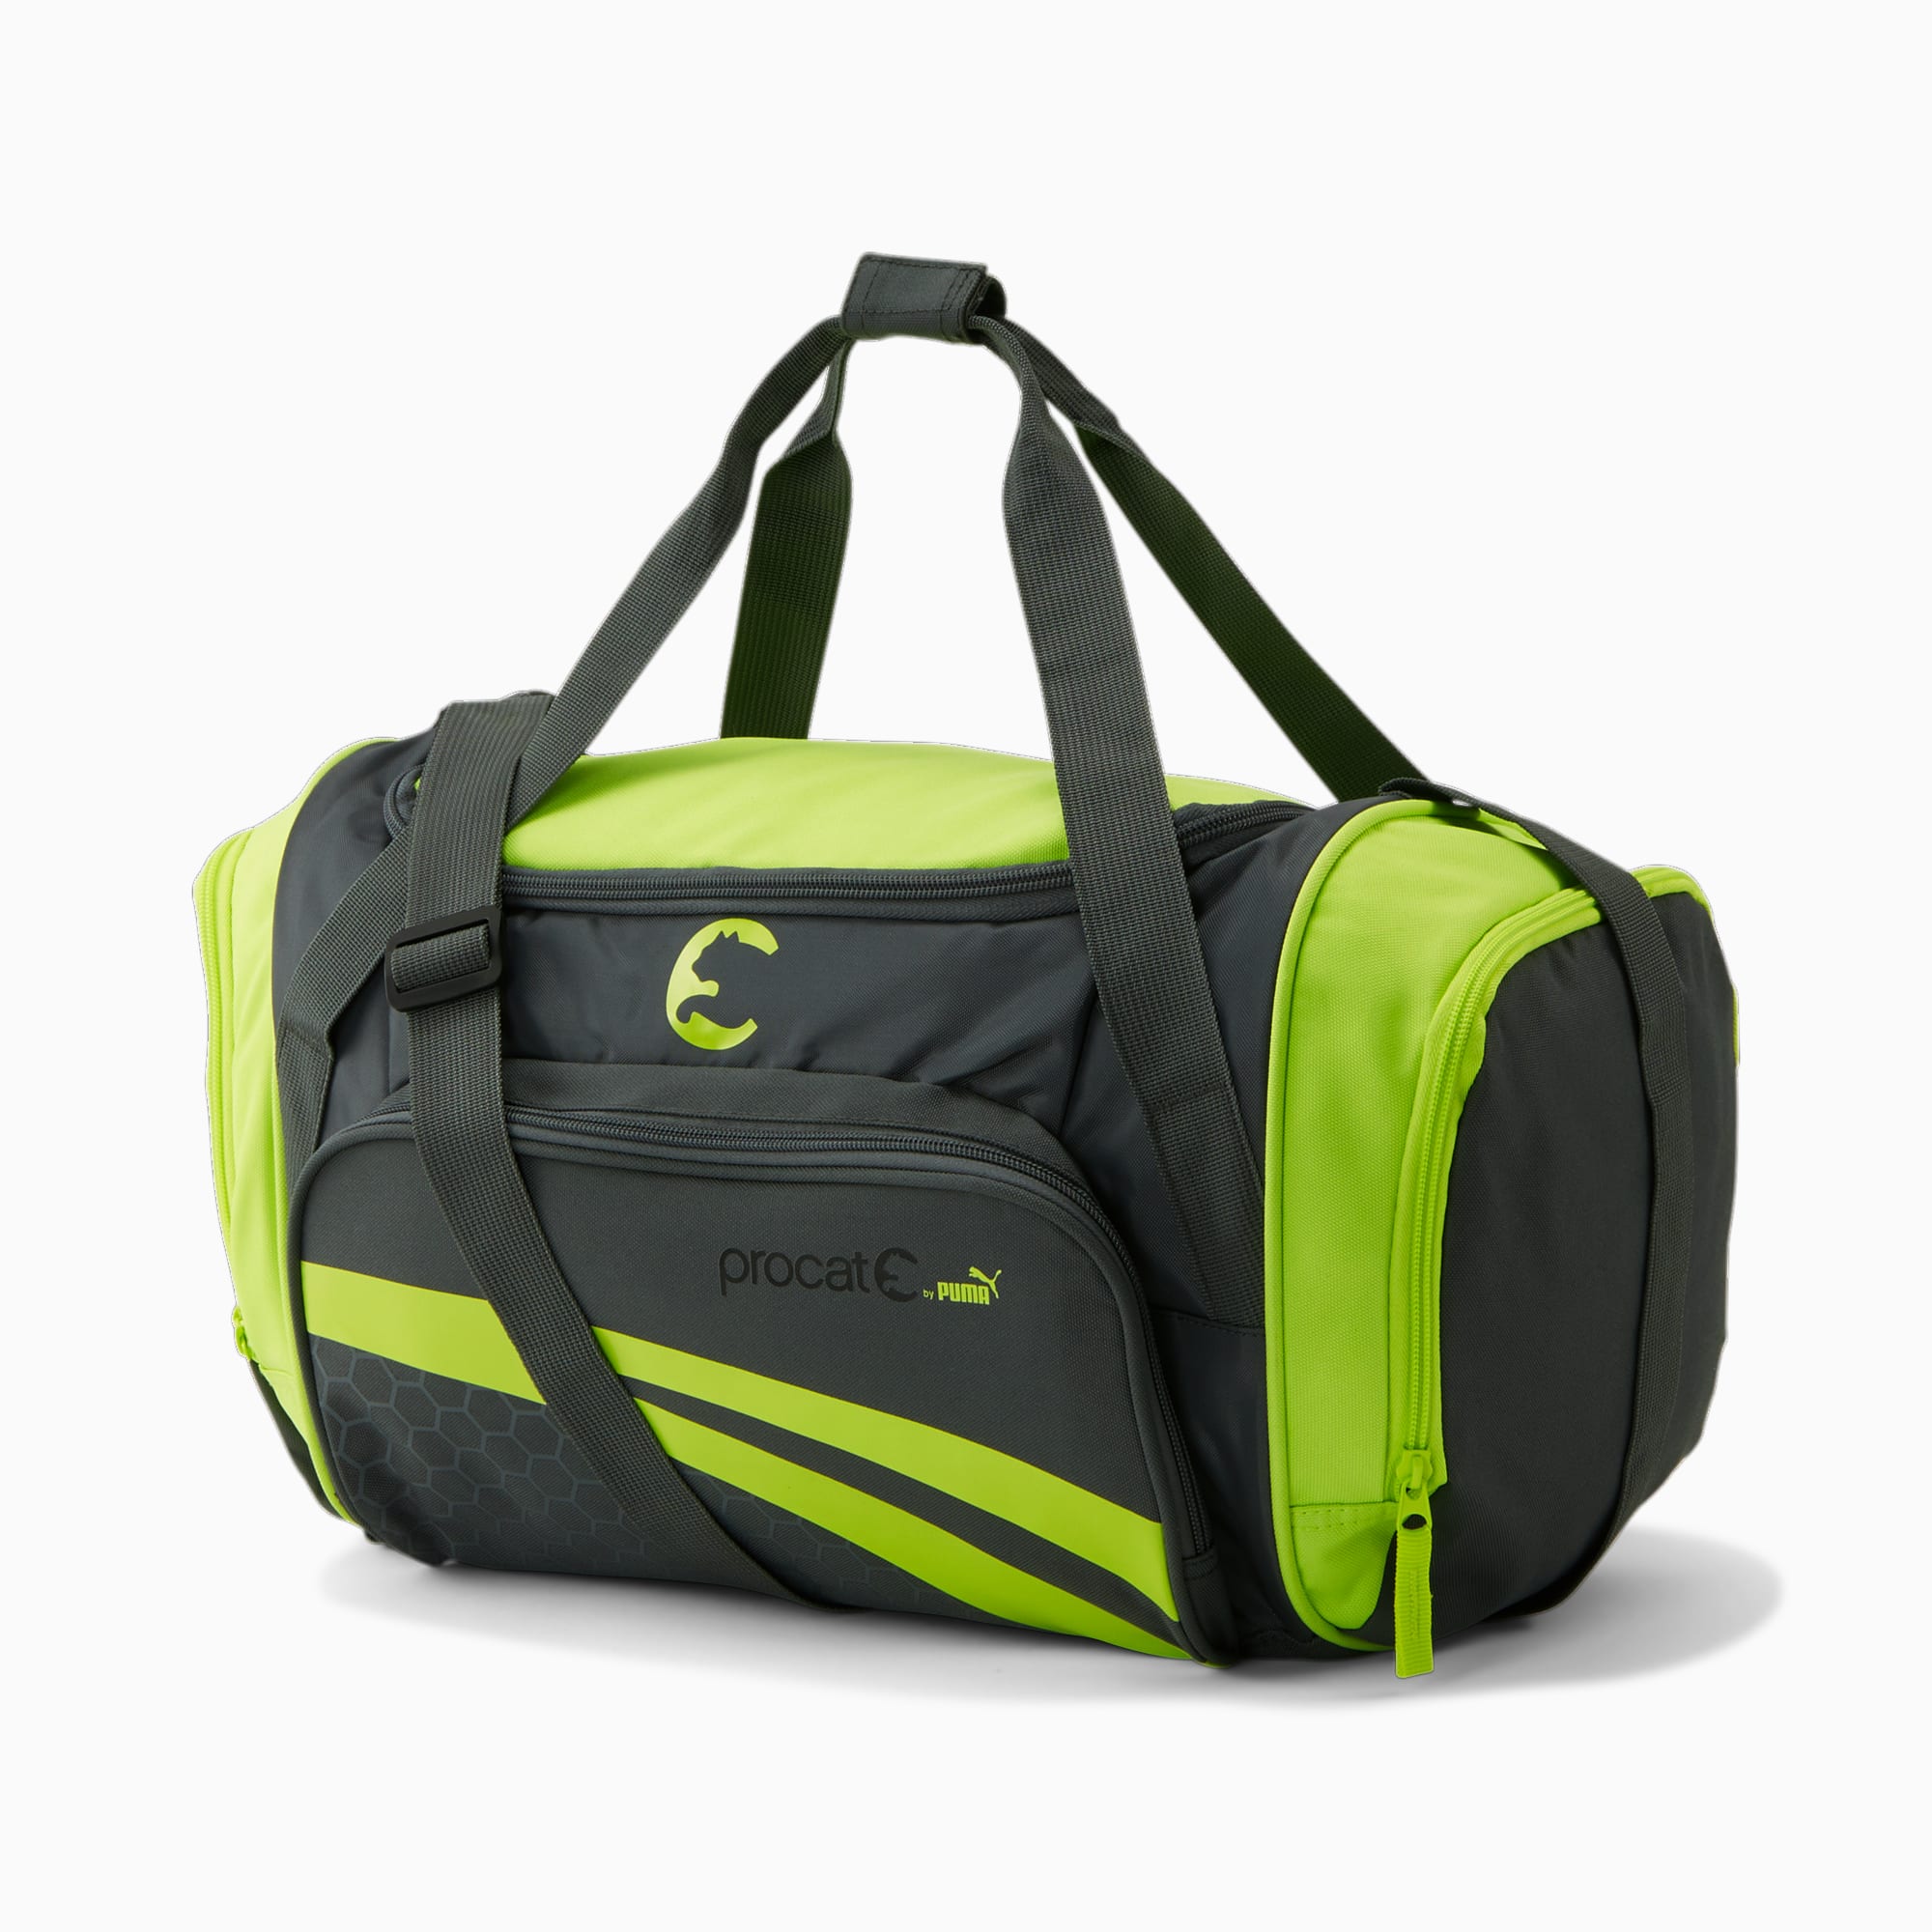 ProCat Duffel Bag | PUMA US